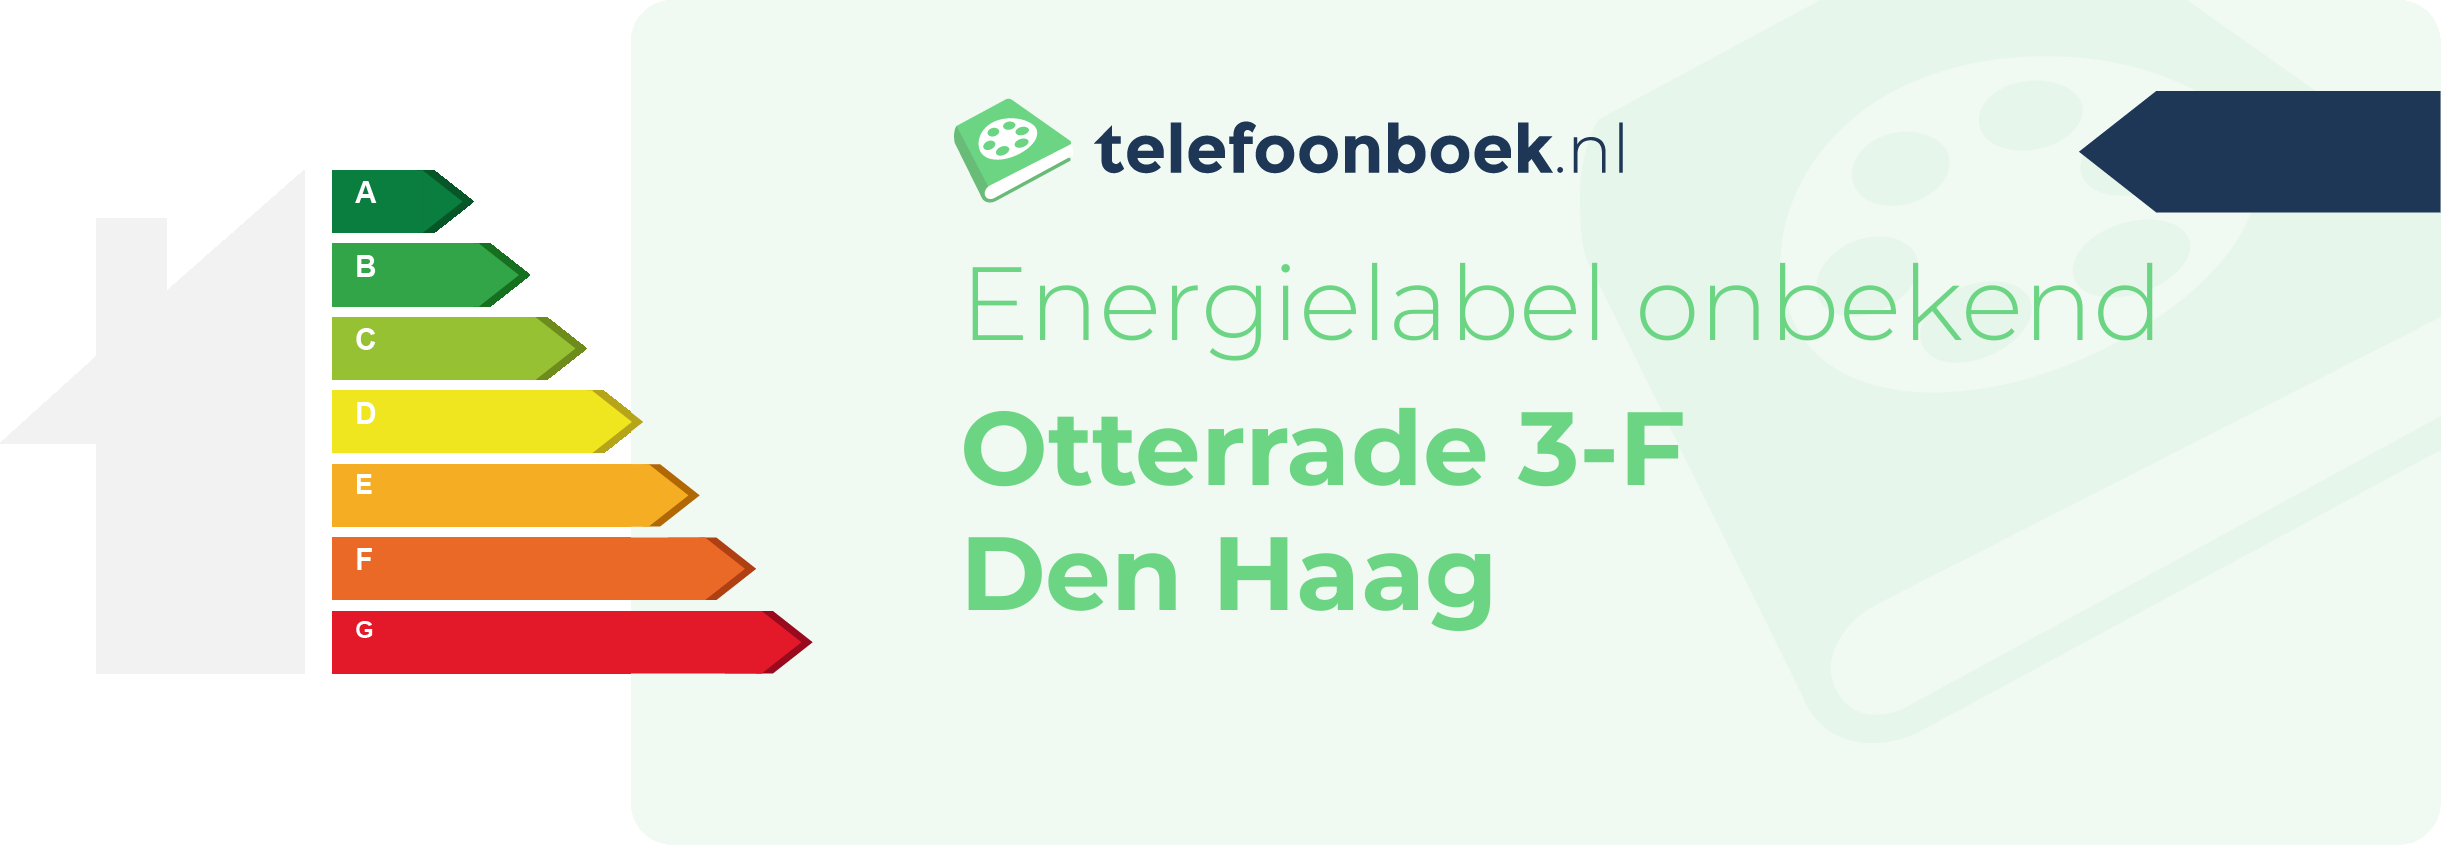 Energielabel Otterrade 3-F Den Haag